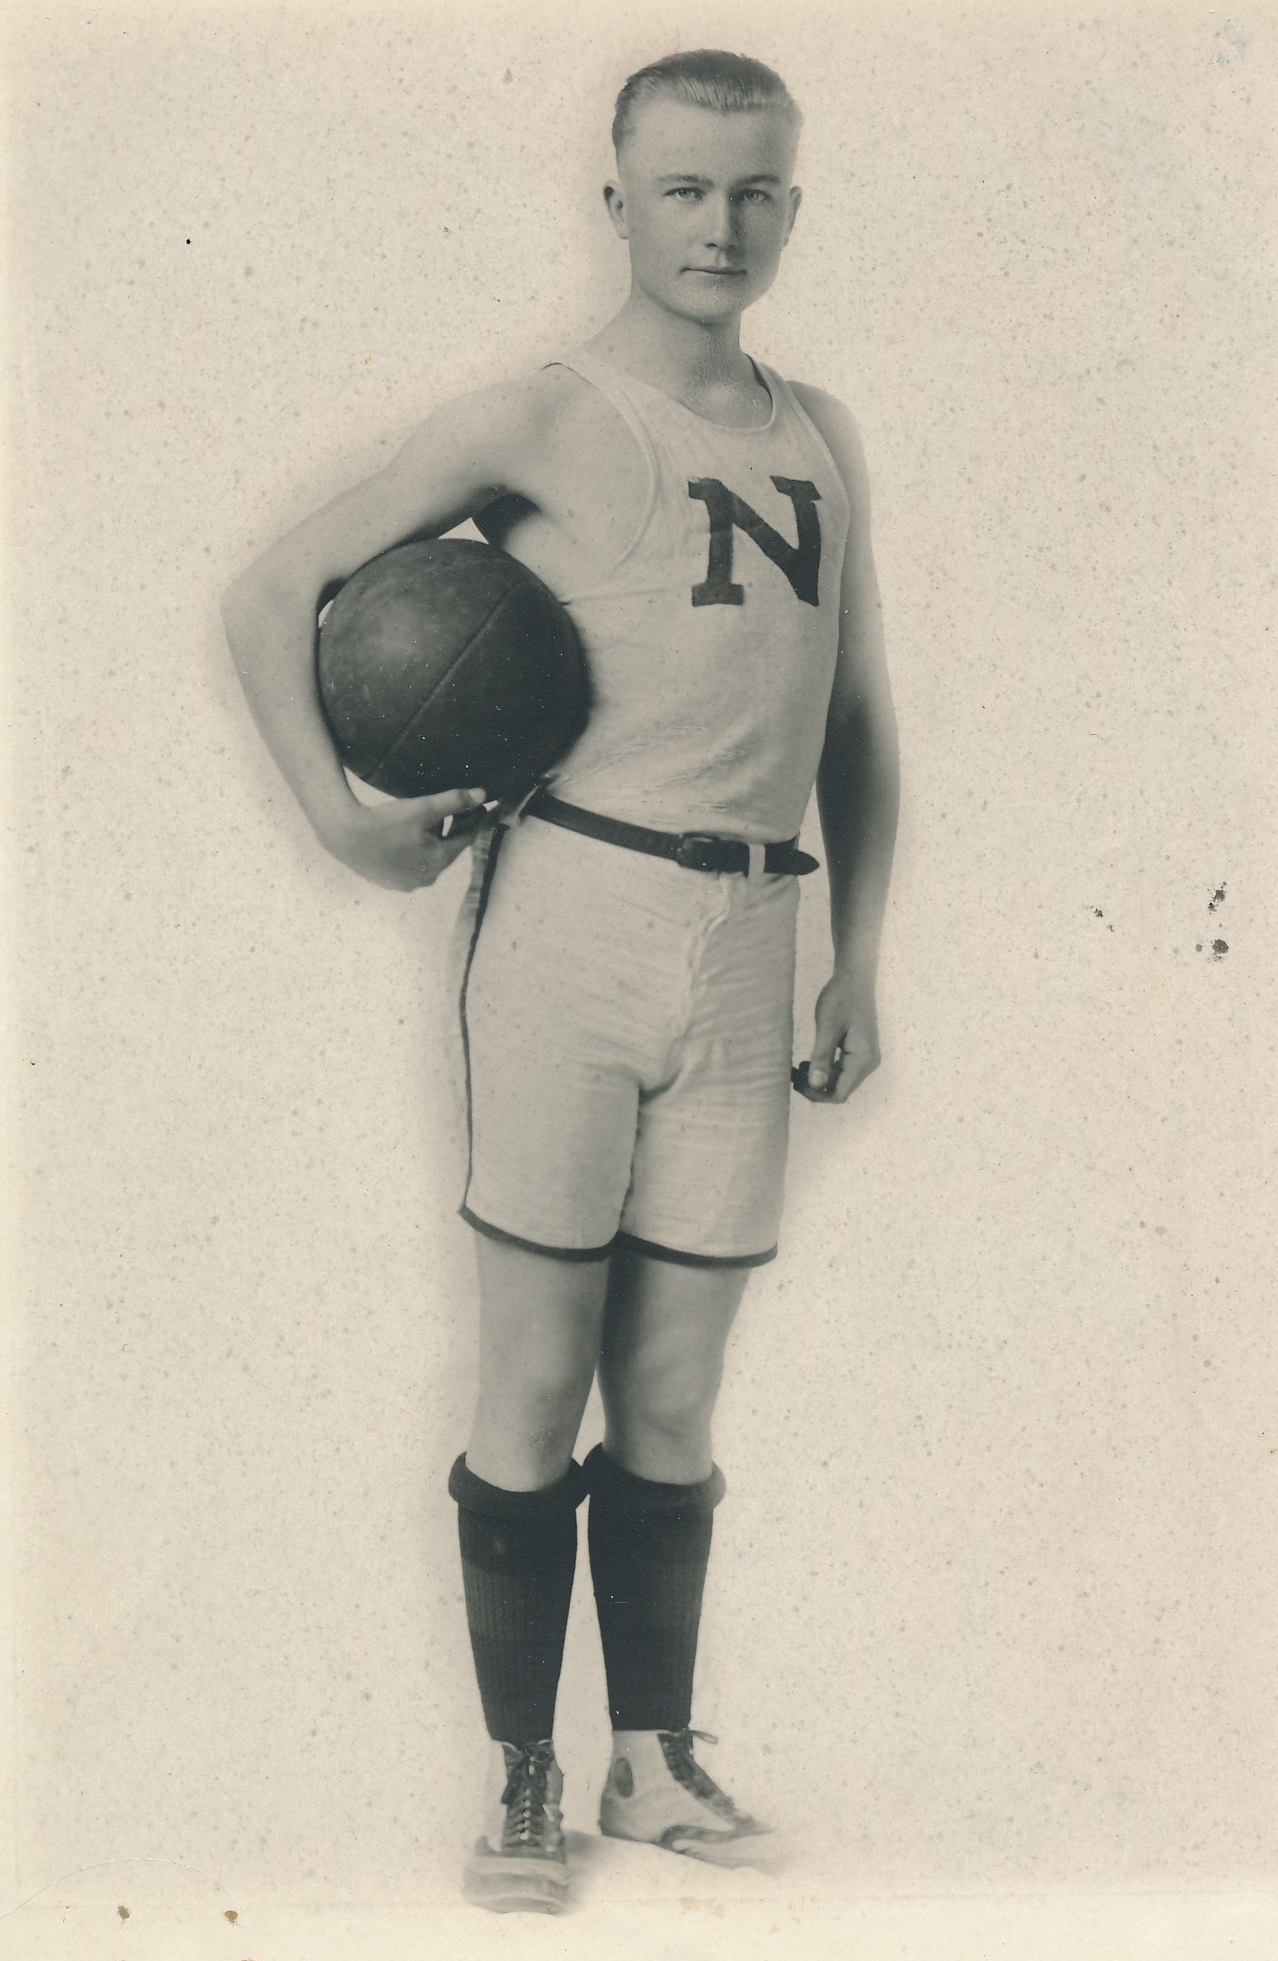 LeRoy Neilson with a basketball